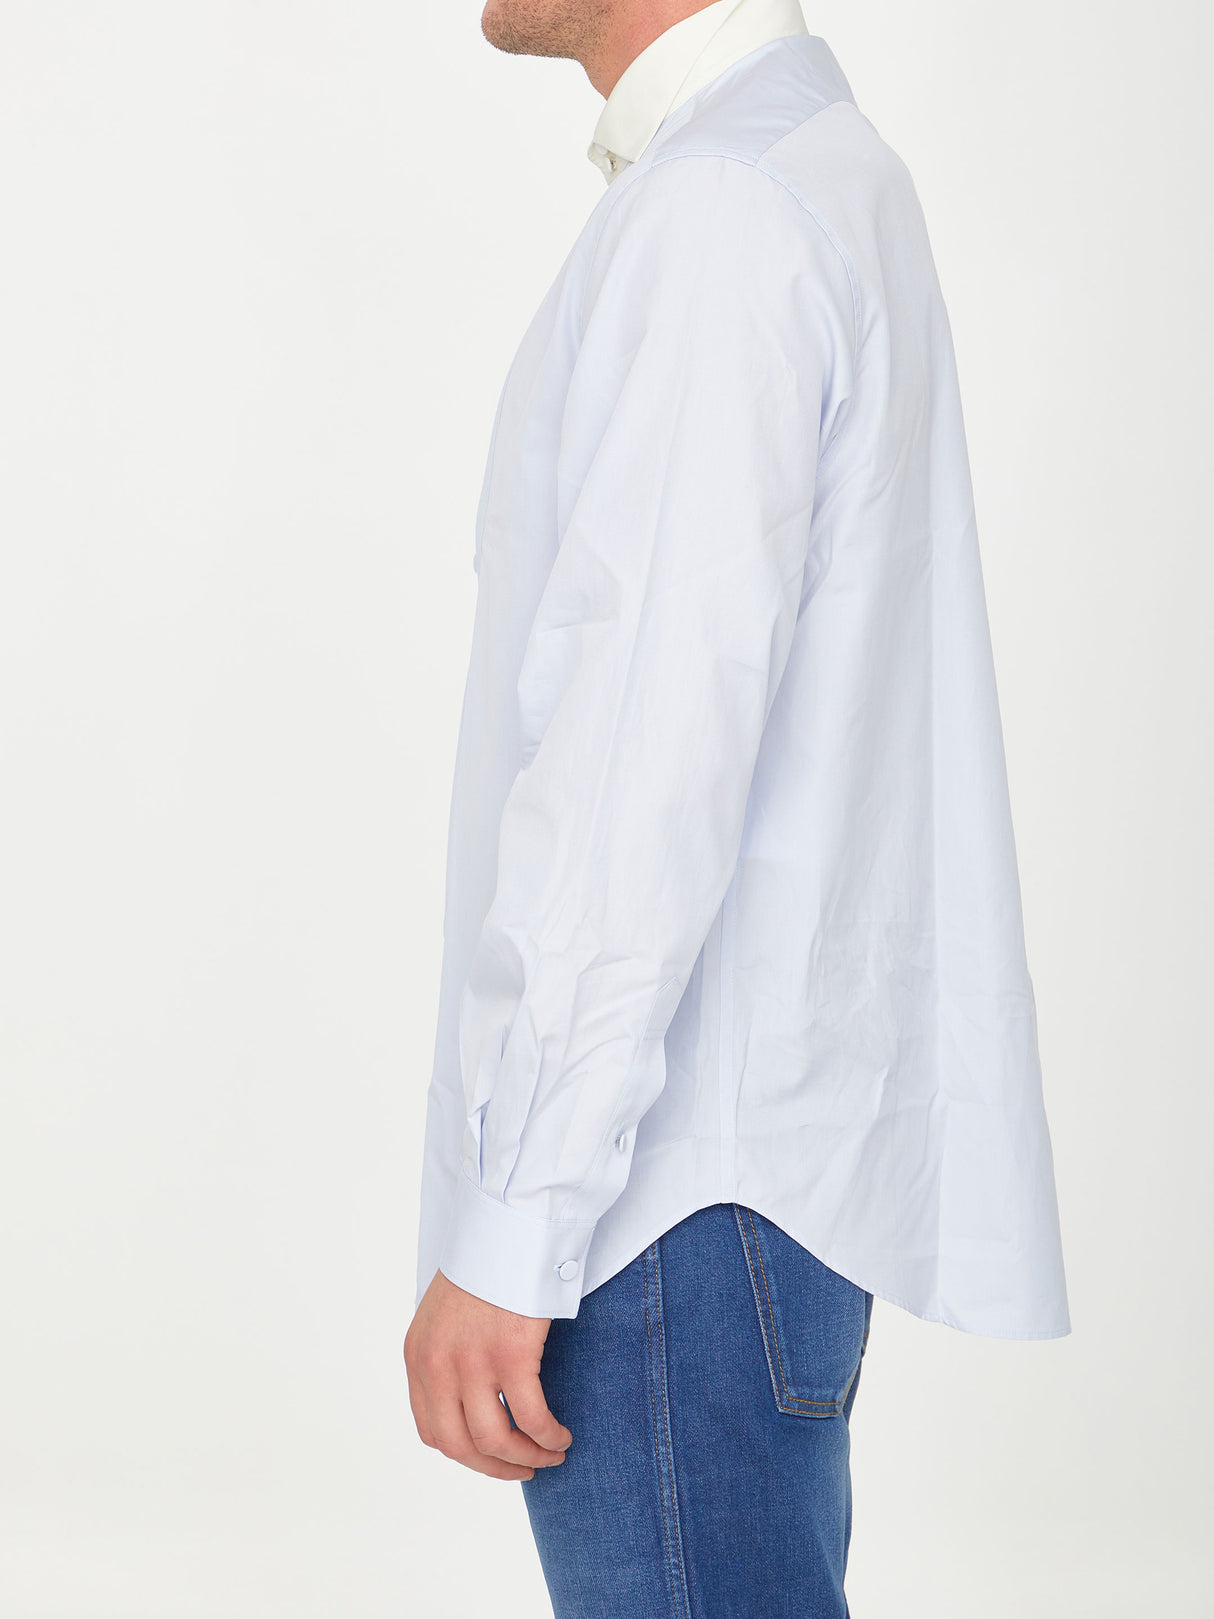 男士轻蓝色棉质罗纹衬衫，前襟有褶皱和撞色领口